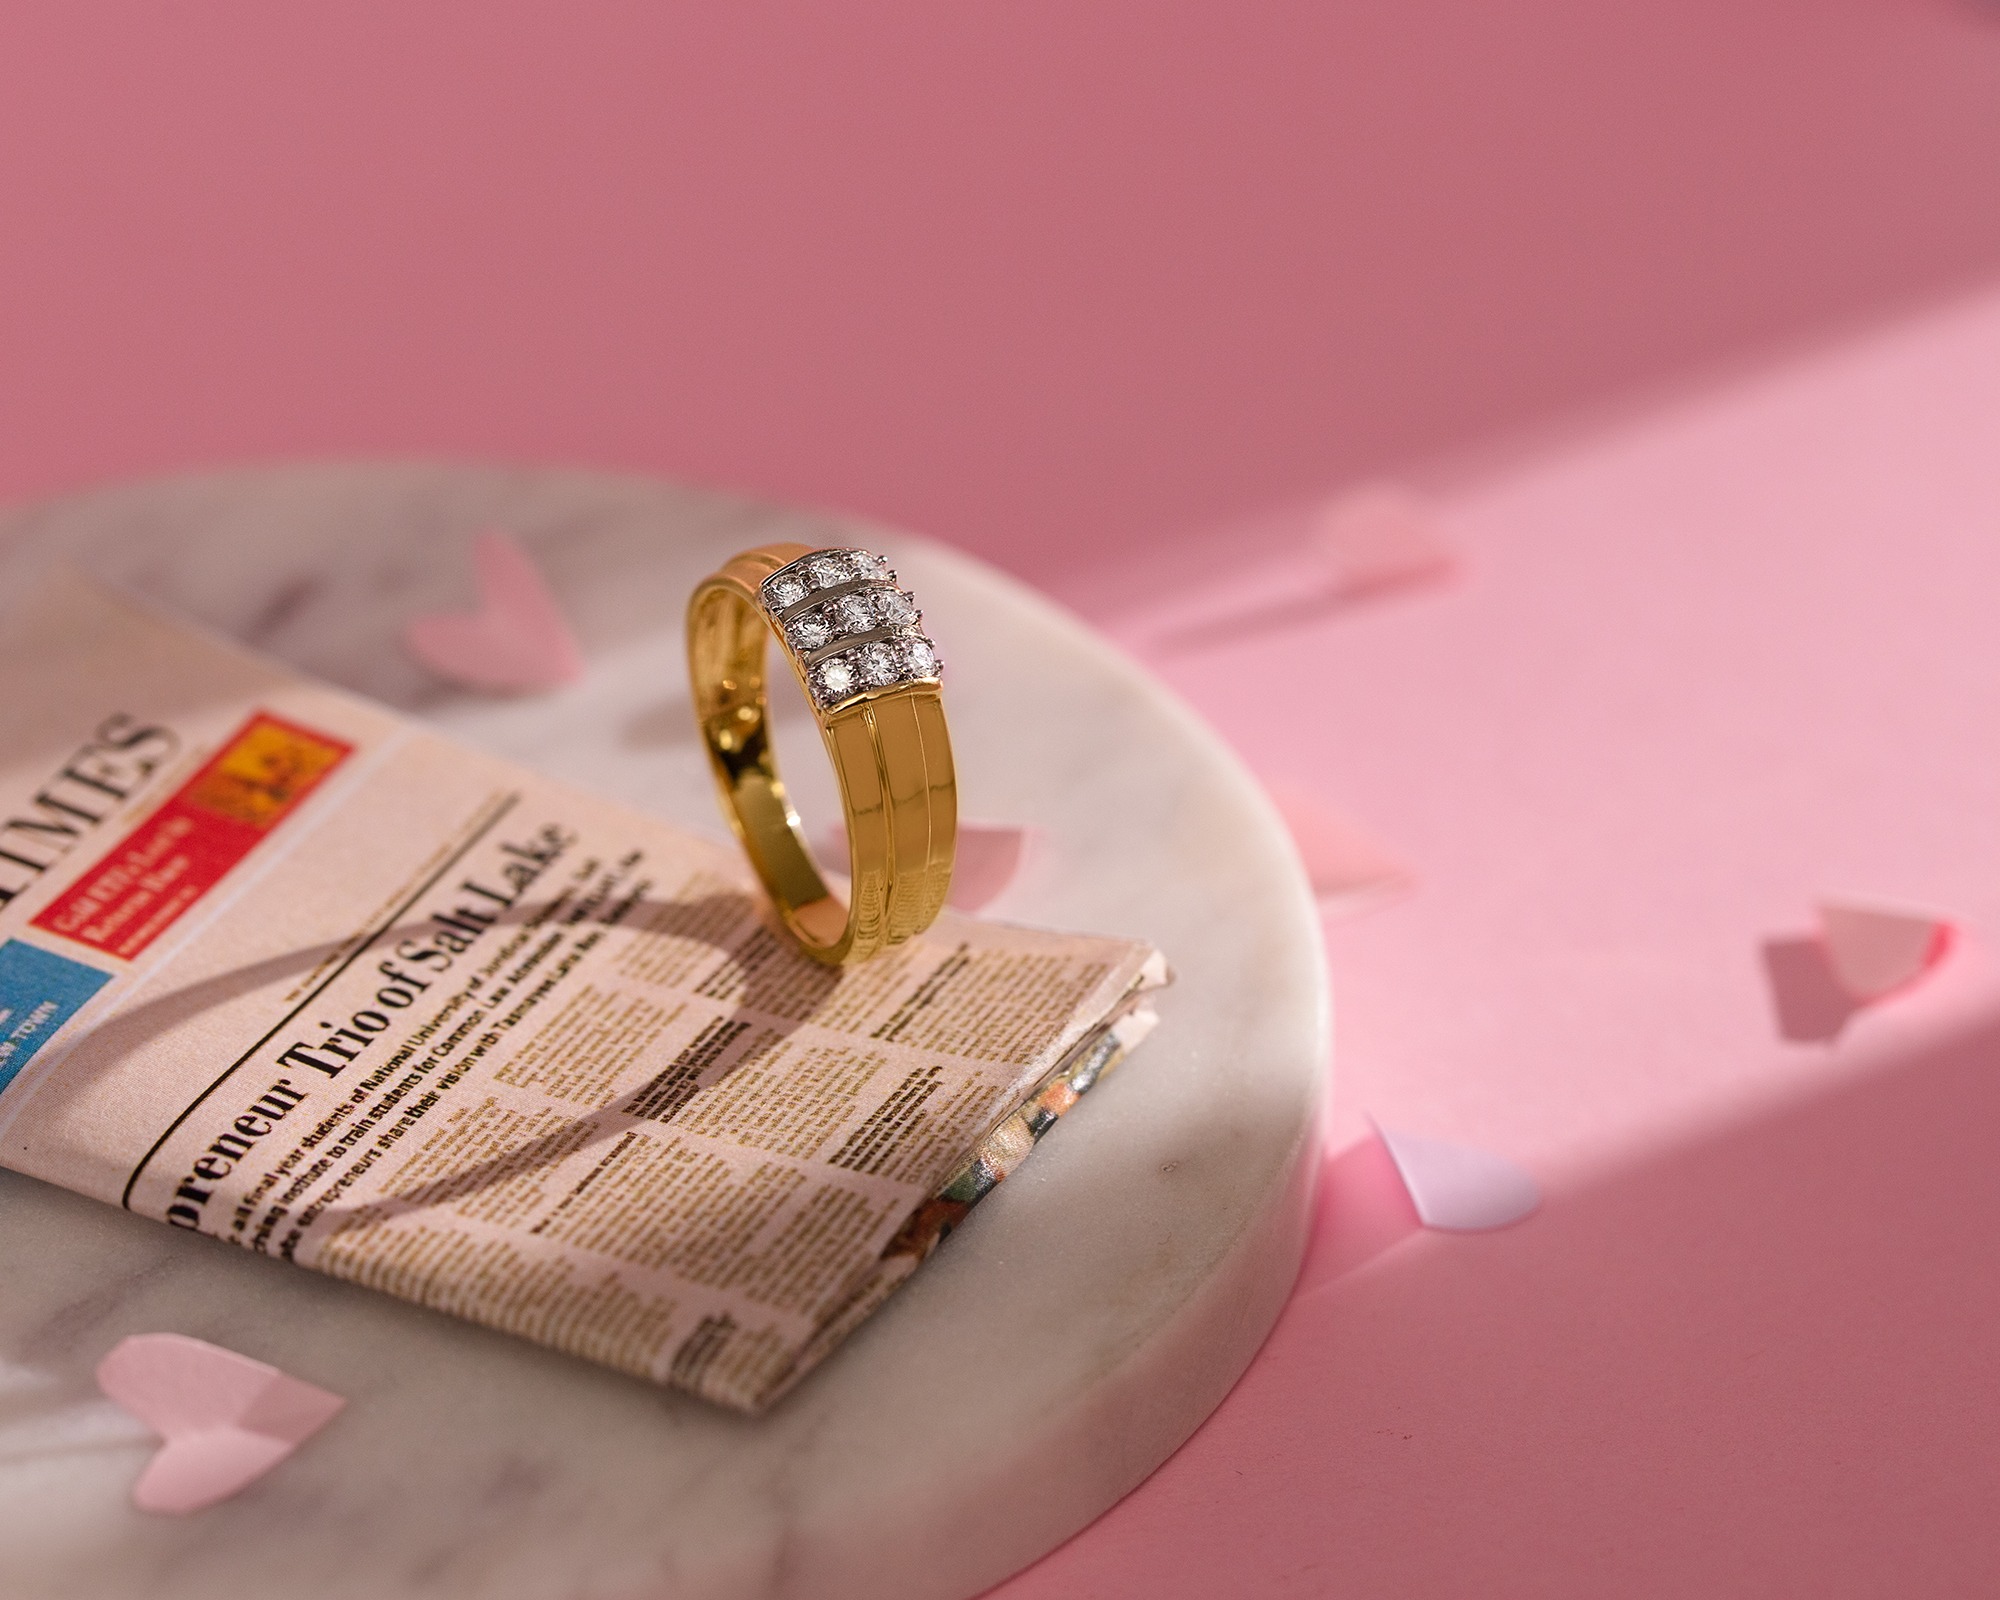 Buy Ivan Diamond Ring For Men Online | CaratLane